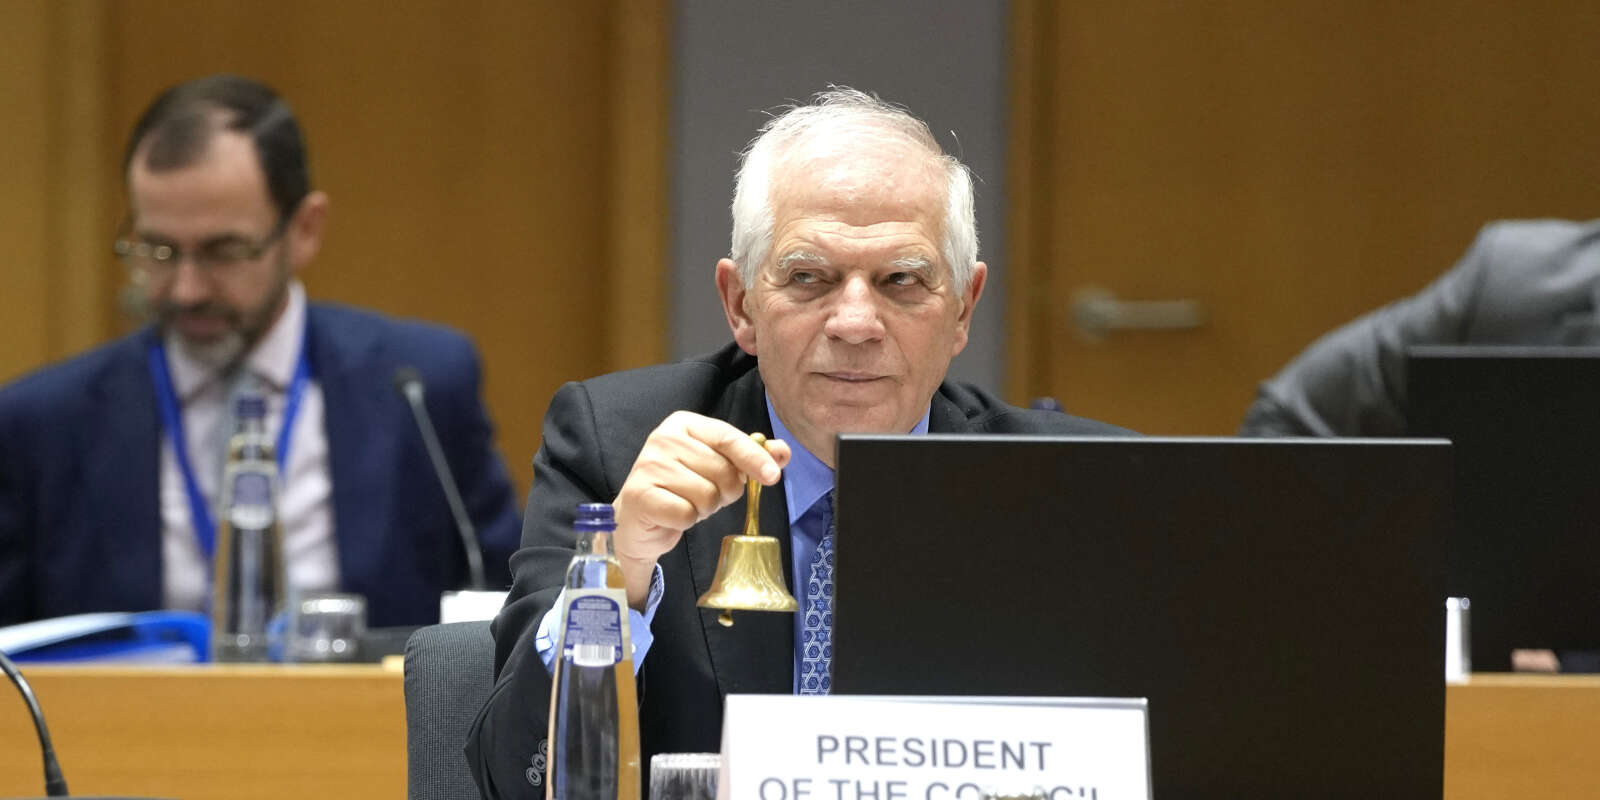 Le chef de la diplomatie européenne Josep Borrell sonne la cloche pour signifier le début de la réunion des ministres des affaires étrangères européens, au Conseil de l’Union européenne à Bruxelles, le 20 mars 2023. 